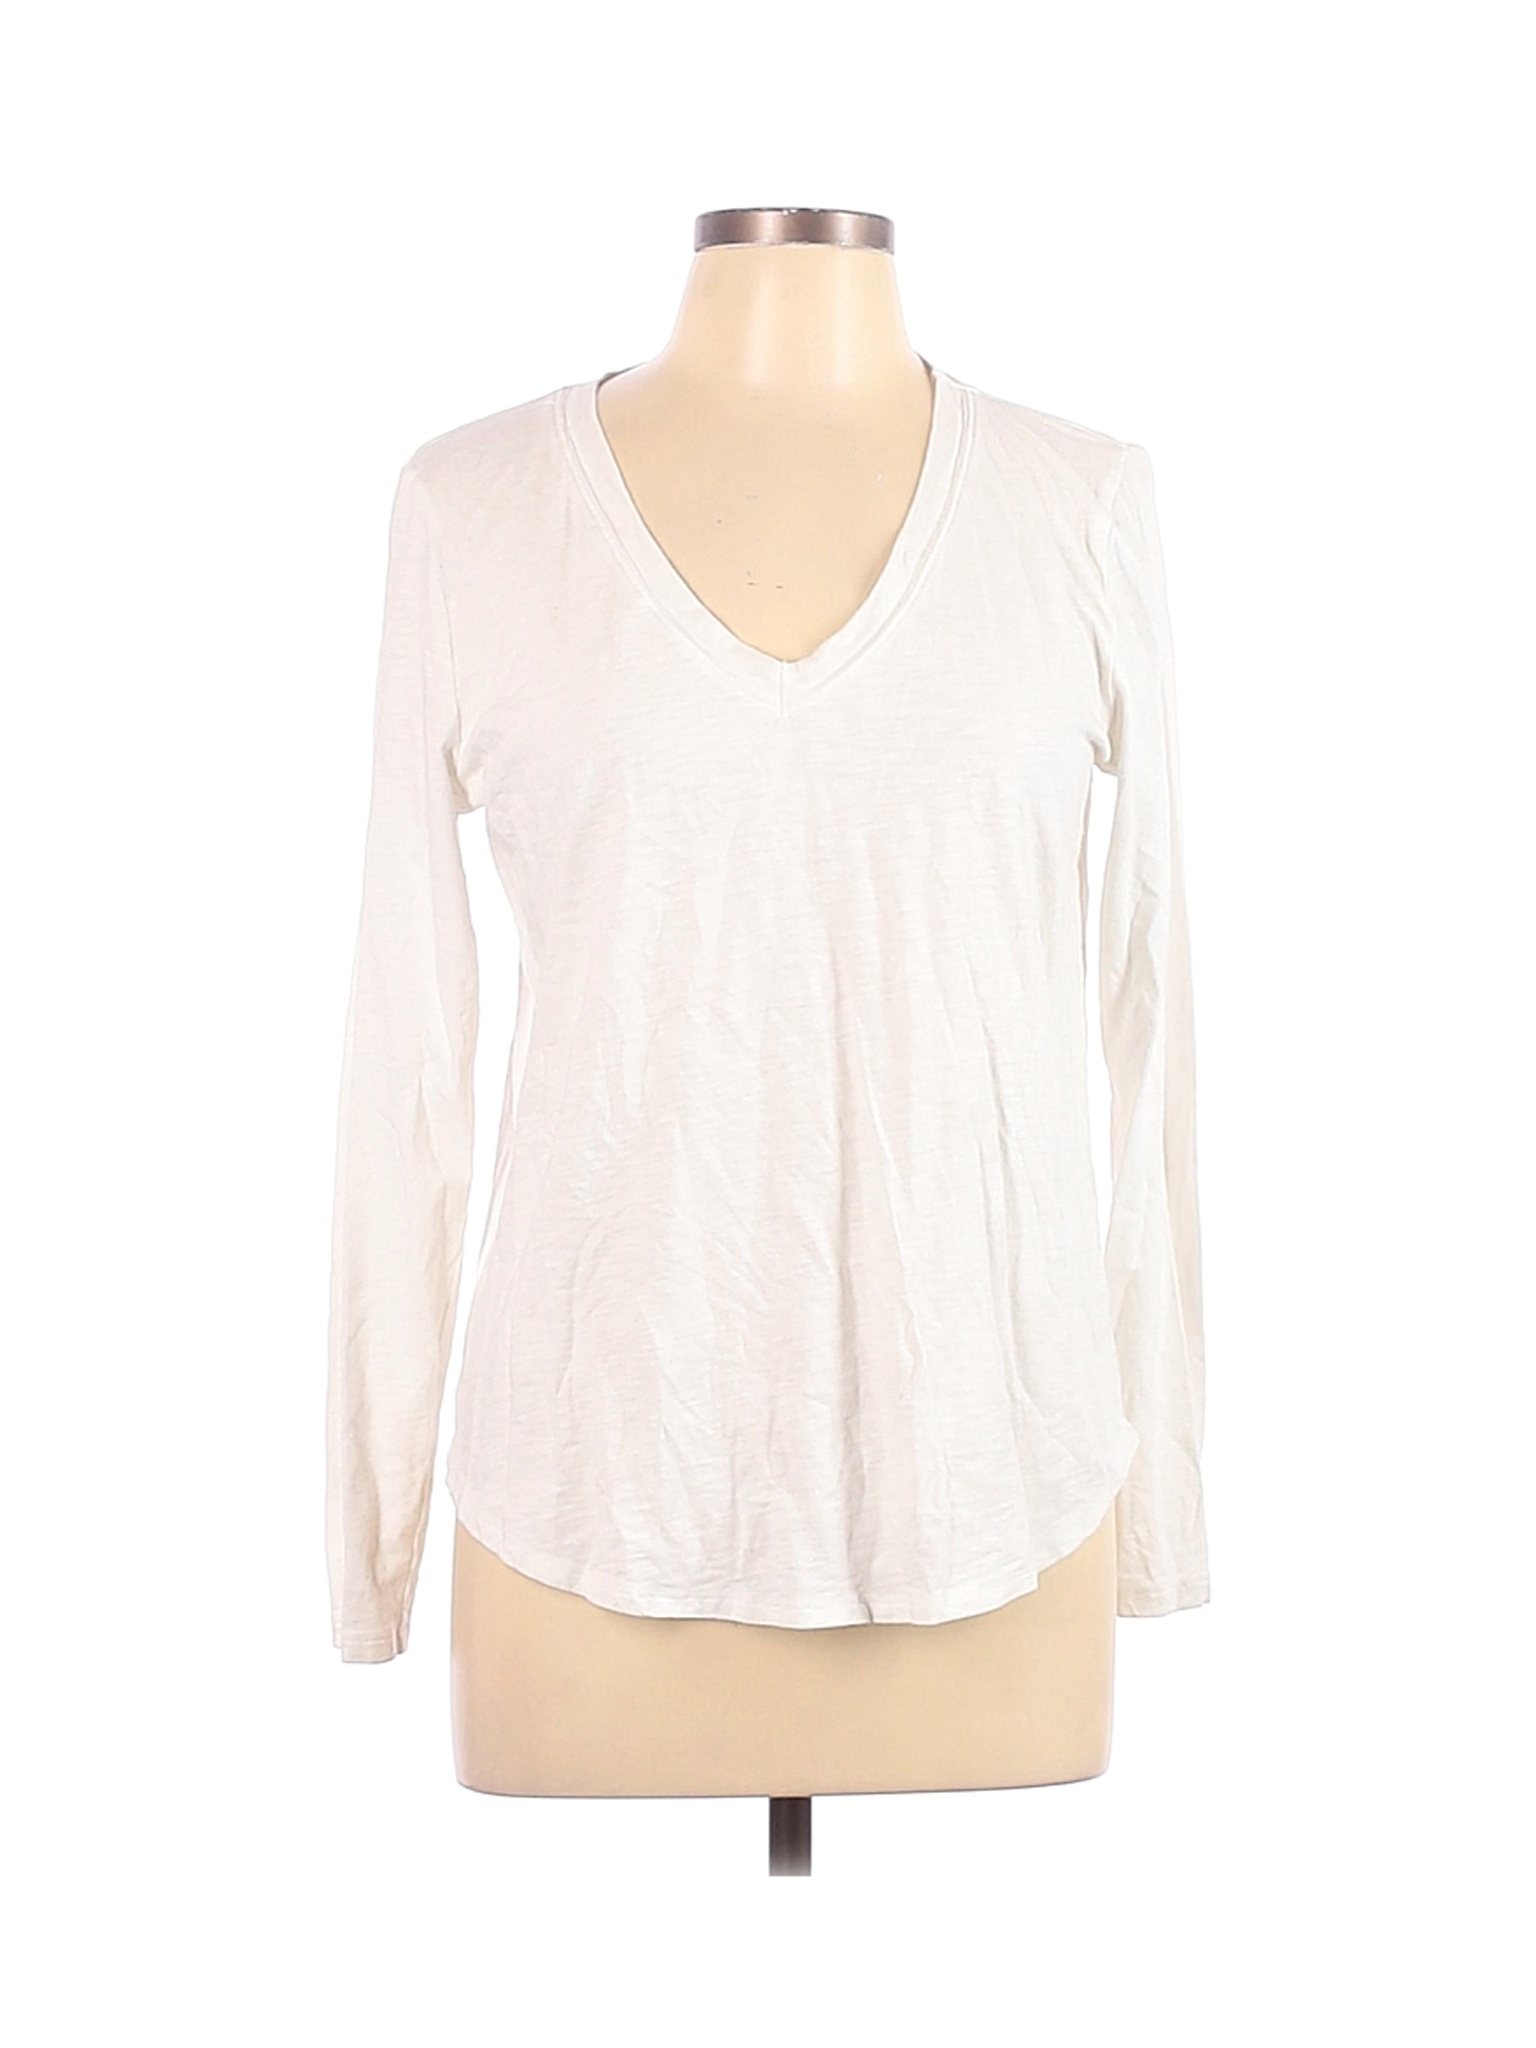 Aerie Women White Long Sleeve T-Shirt L | eBay